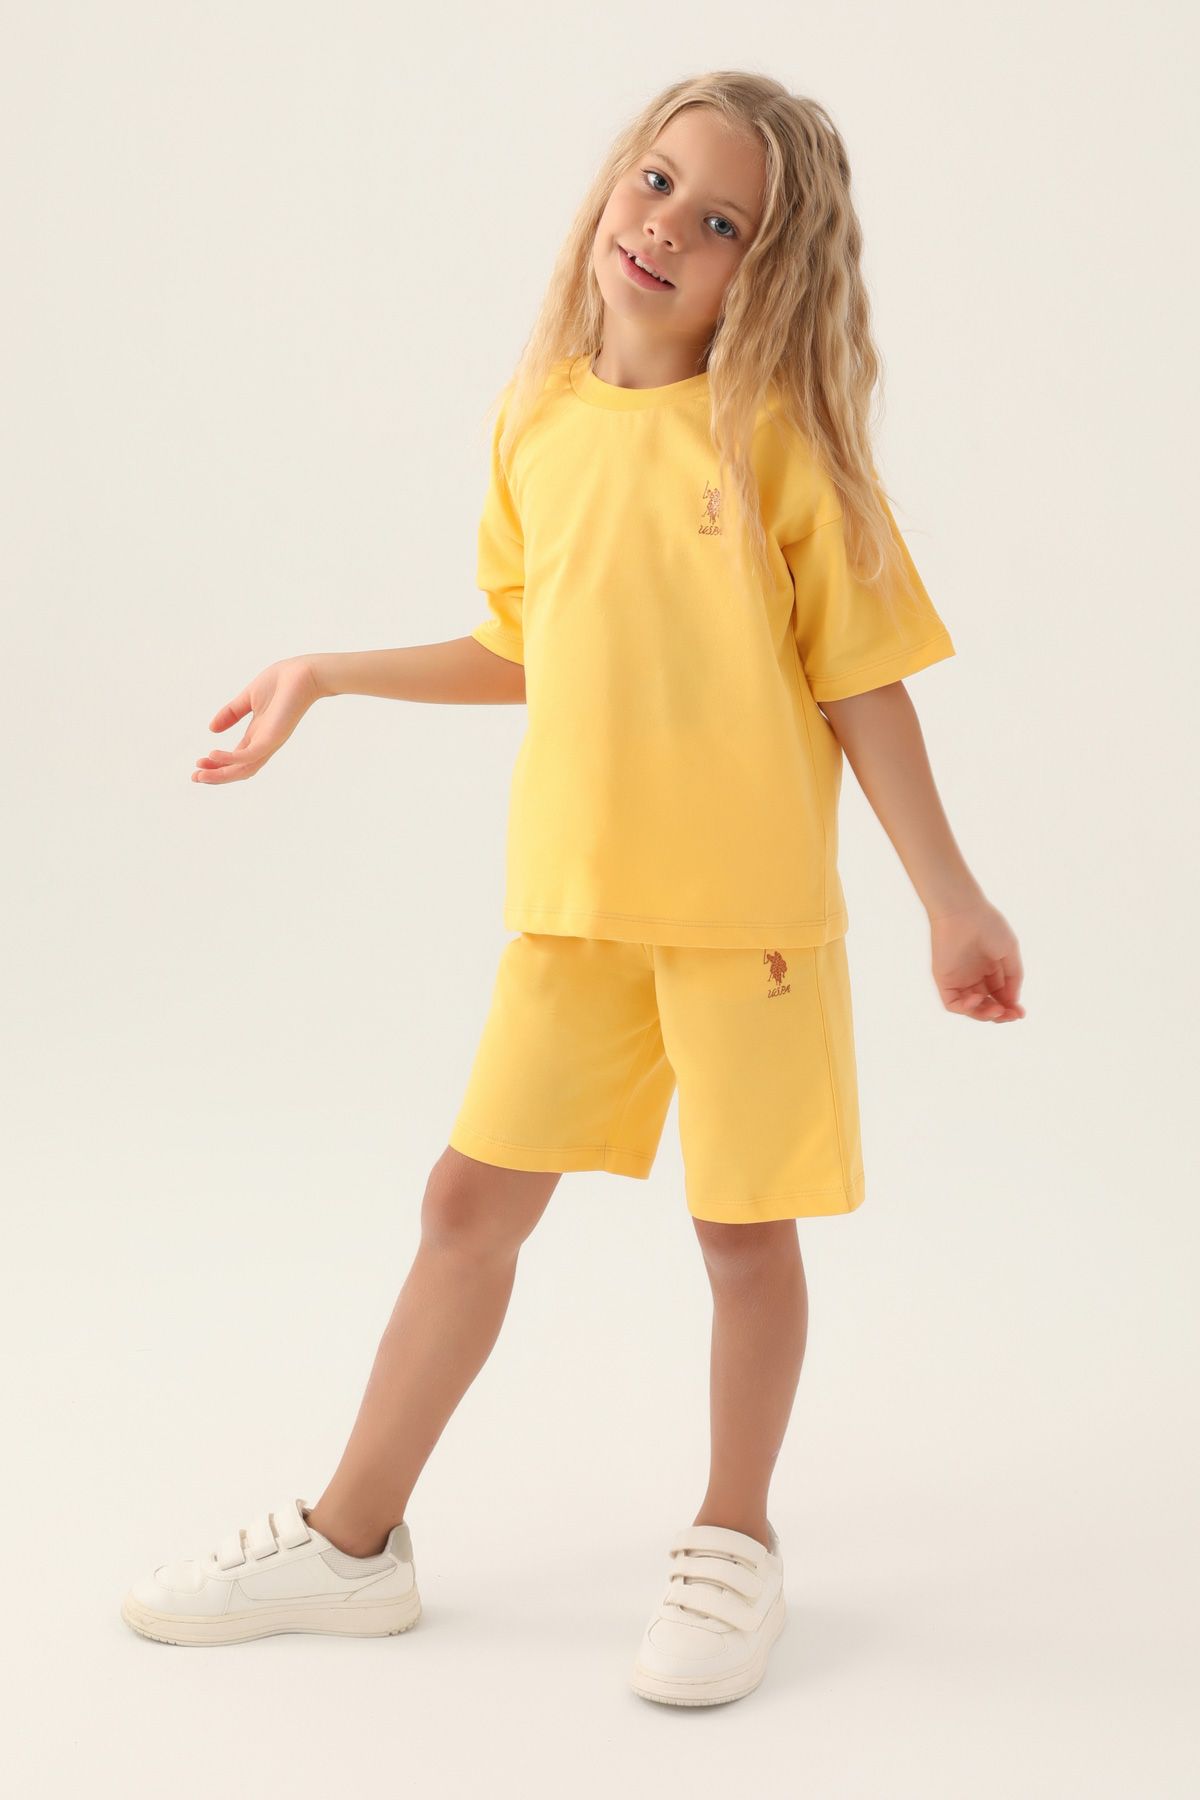 Костюм повседневный детский U.S. POLO Assn. US1822-V1, желтый, 128 костюм повседневный детский u s polo assn us1822 v1 розовая пудра 122